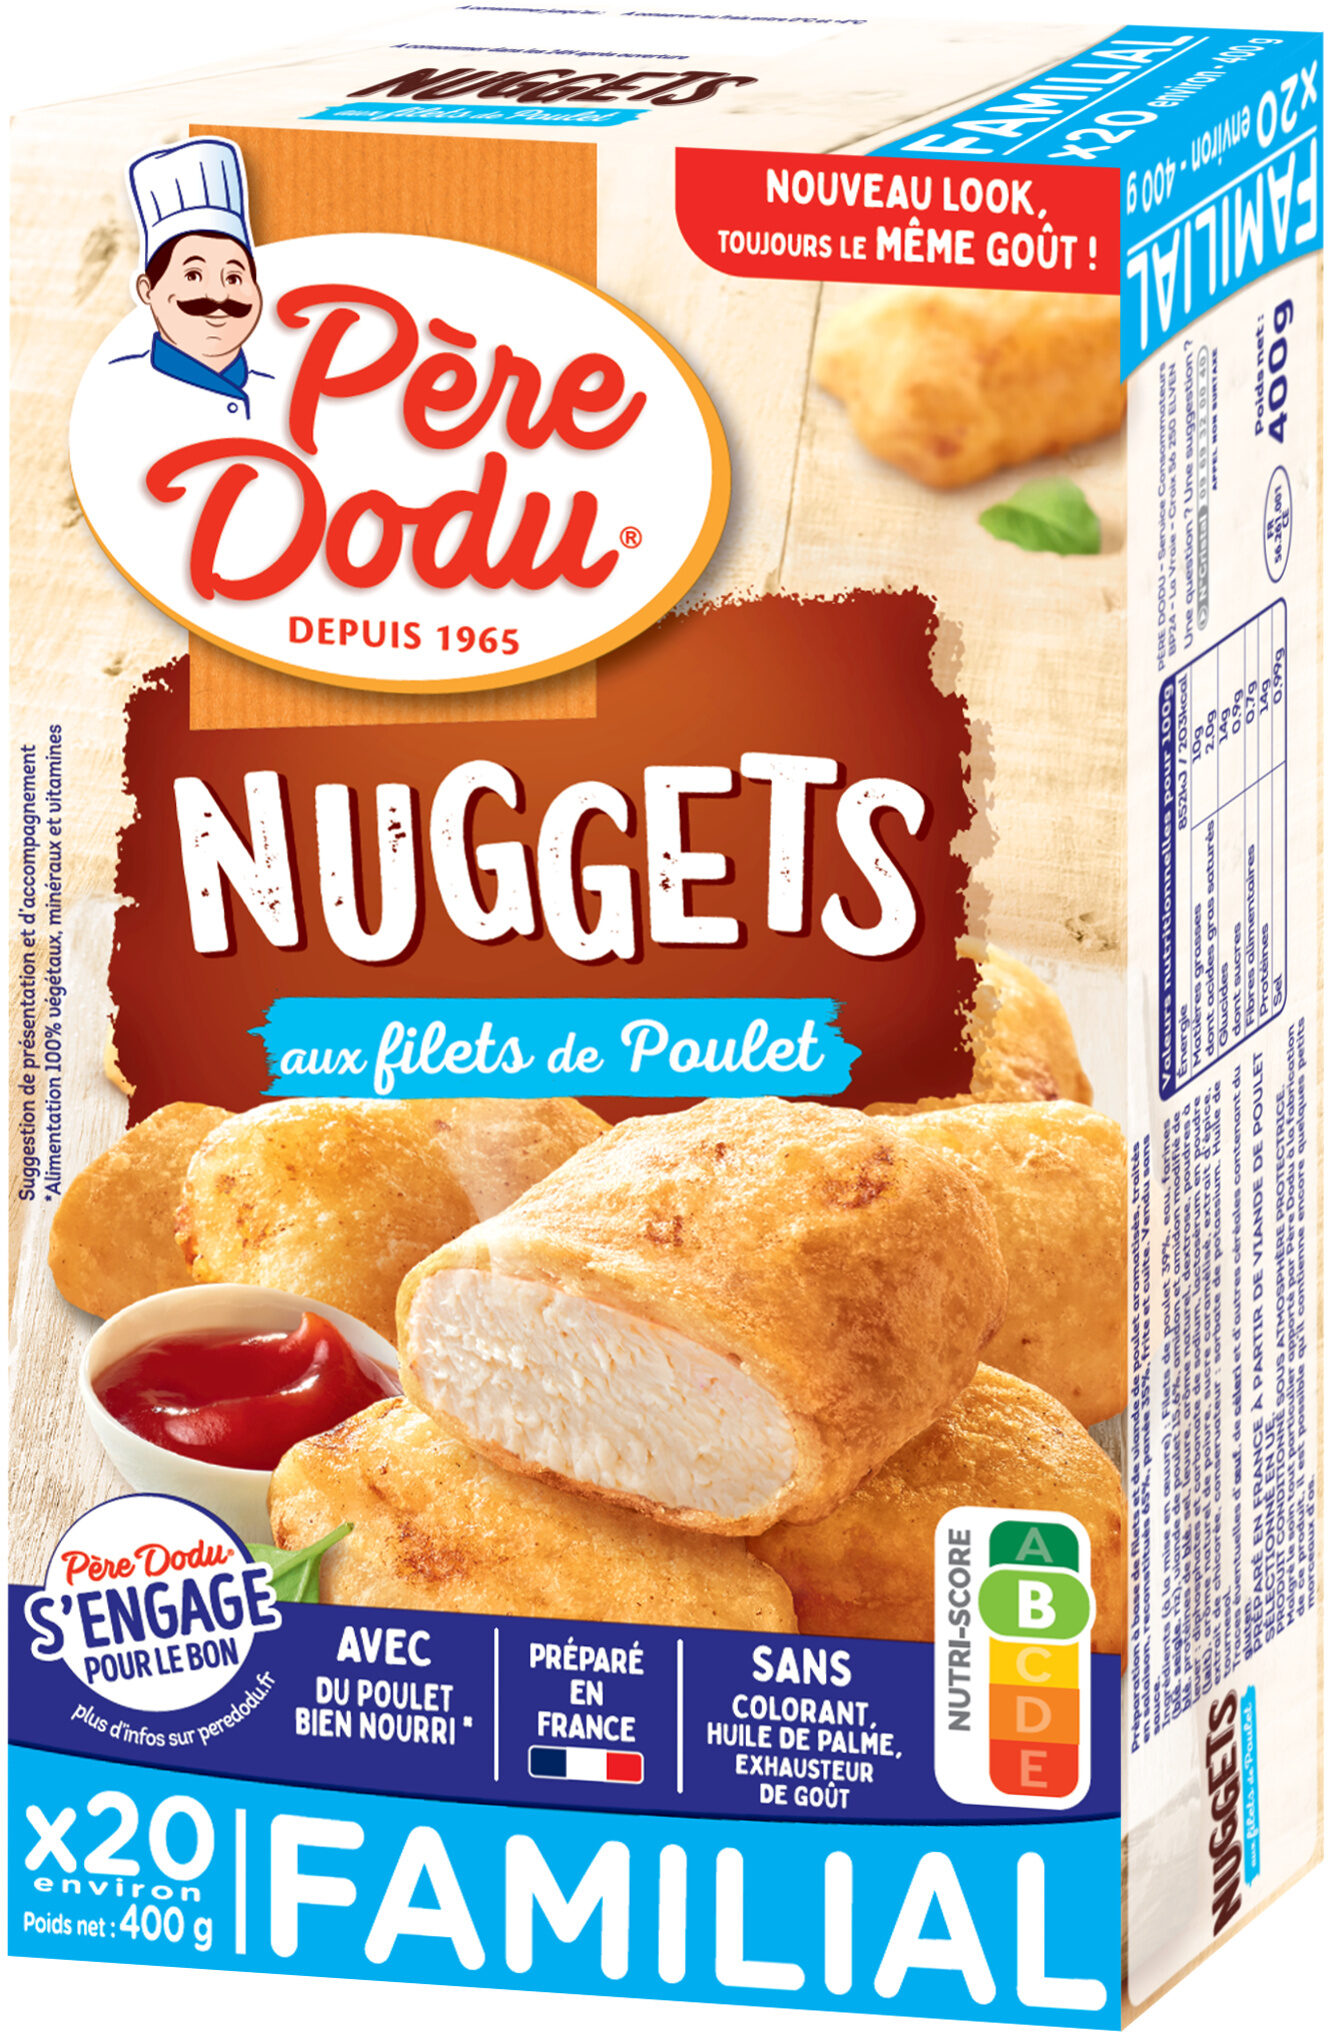 Nuggets aux filets de poulet - Produit - fr